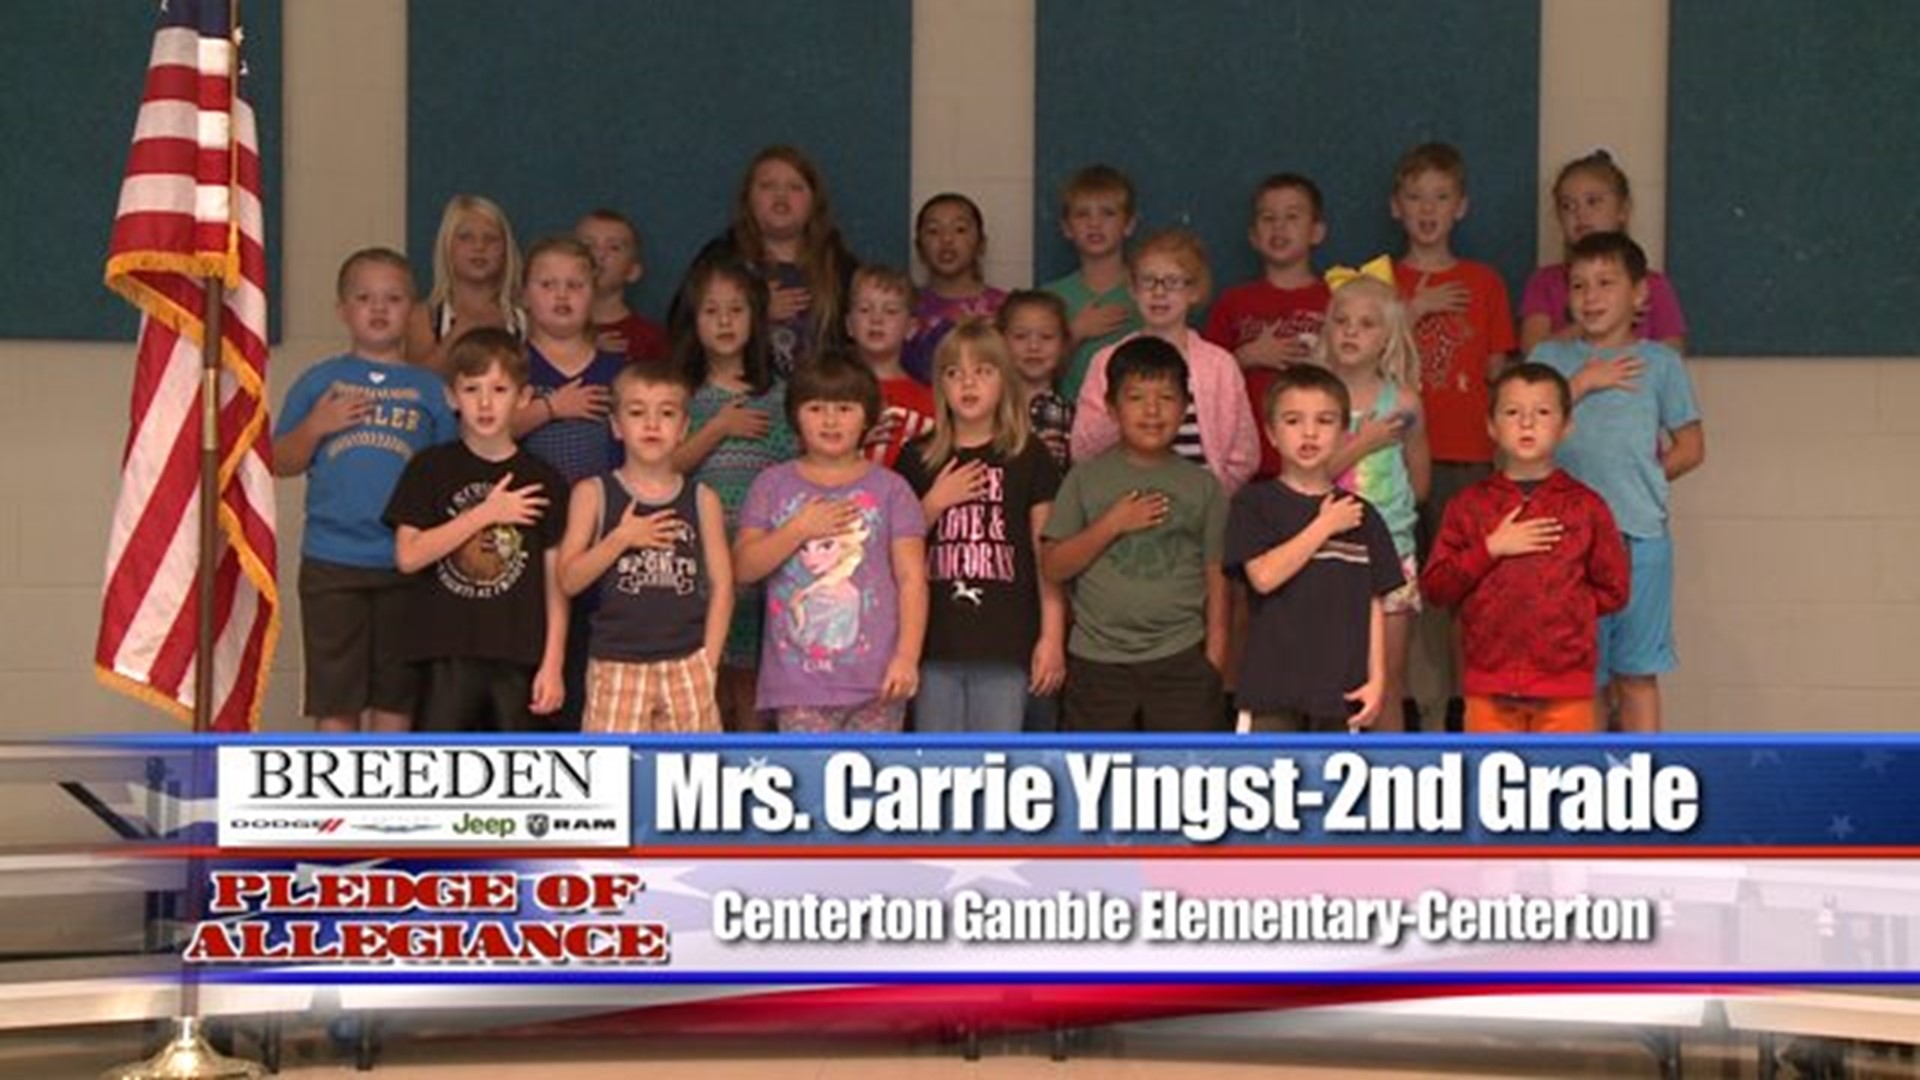 Centerton Gamble Elementary - Centerton - Mrs. Carrie Yingst - 2nd Grade